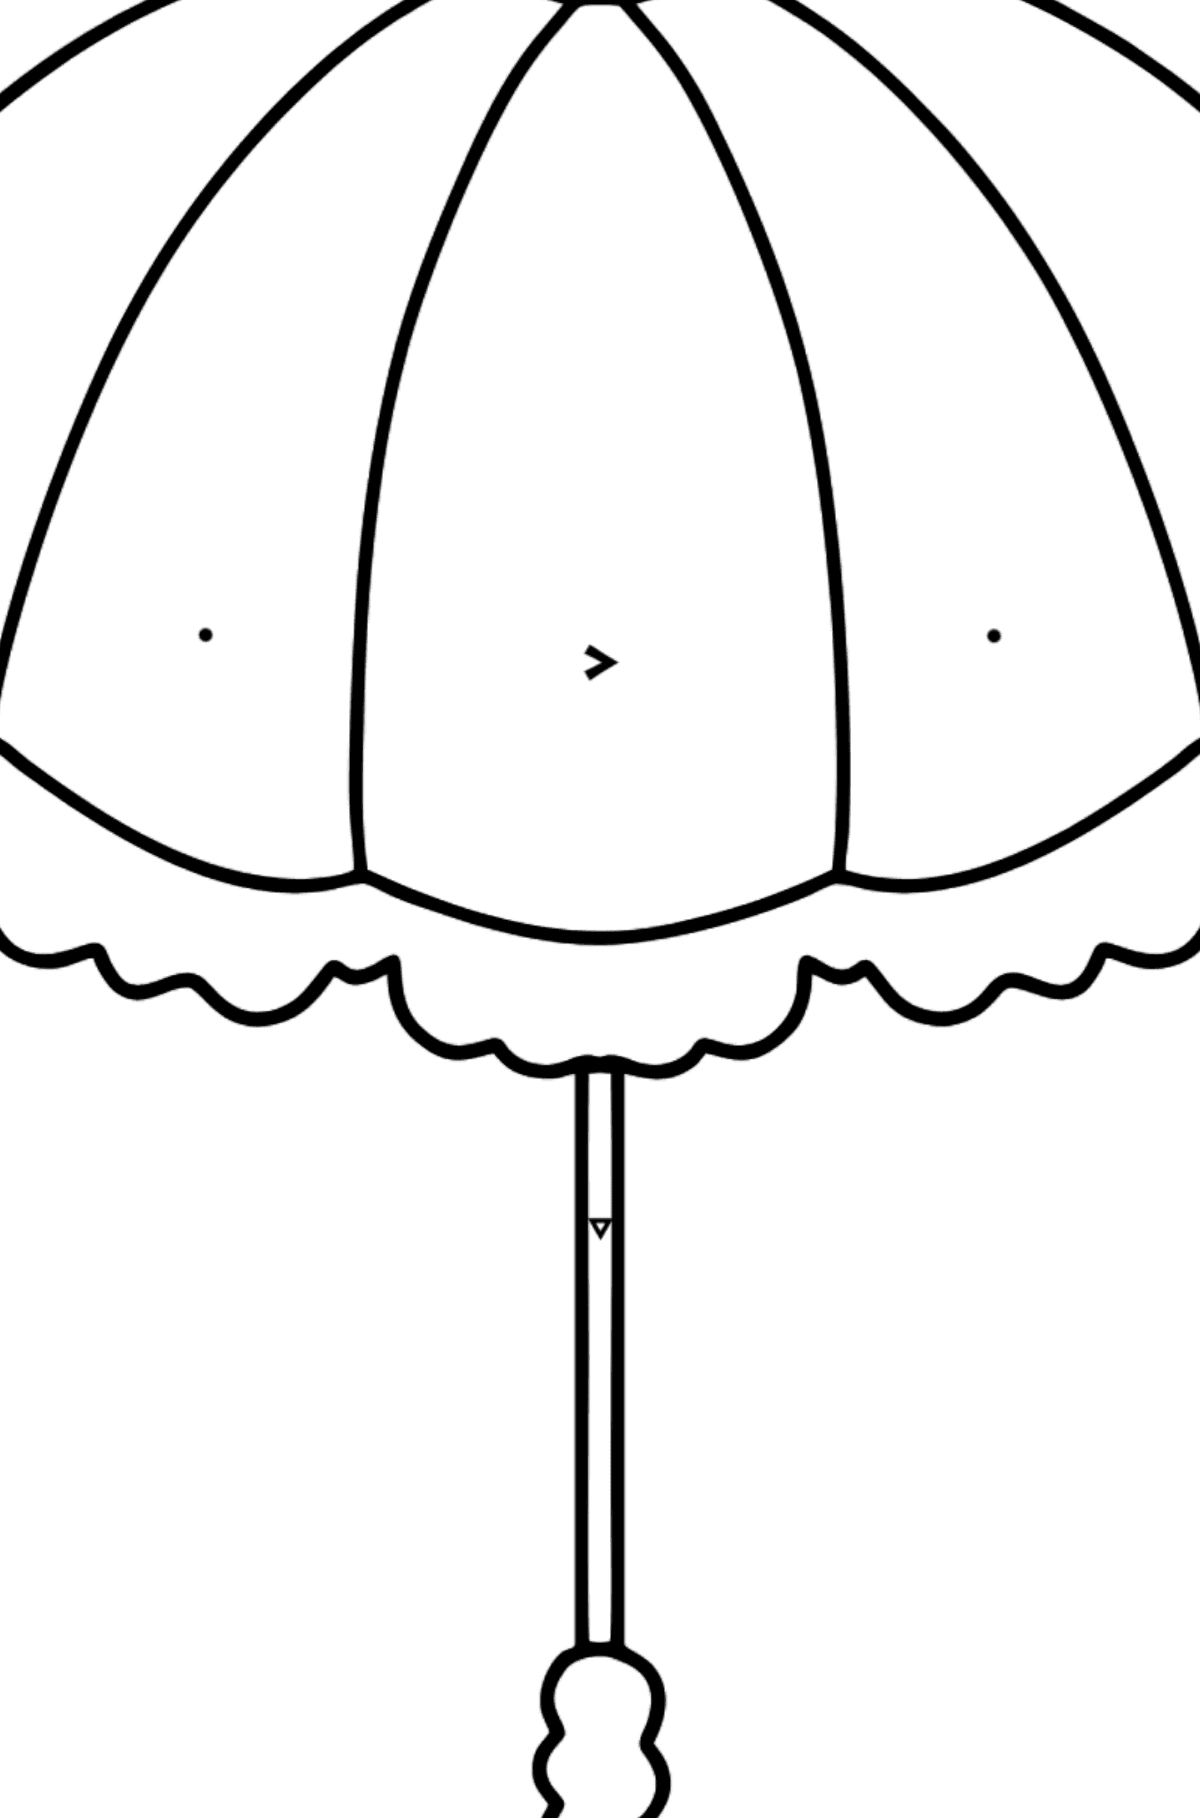 Kleurplaat paraplu (makkelijk) - Kleuren met symbolen voor kinderen